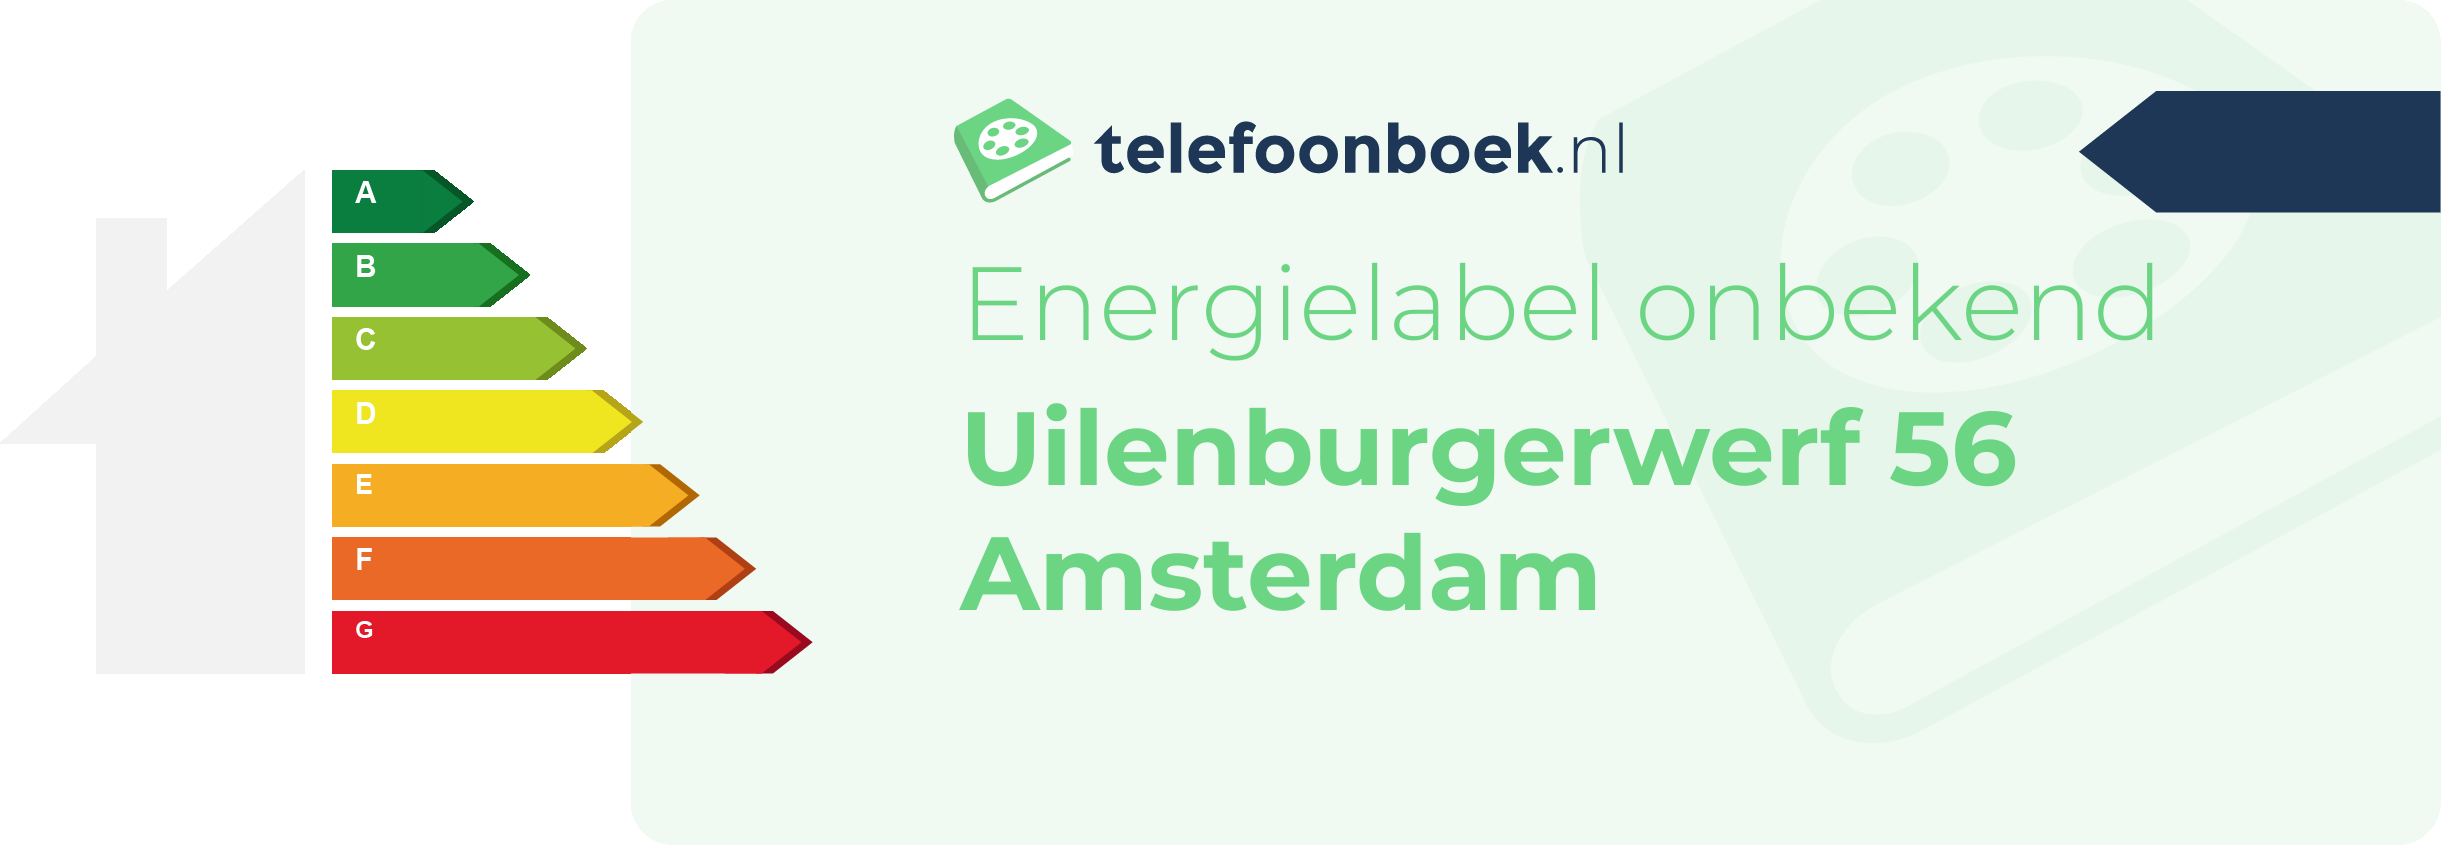 Energielabel Uilenburgerwerf 56 Amsterdam